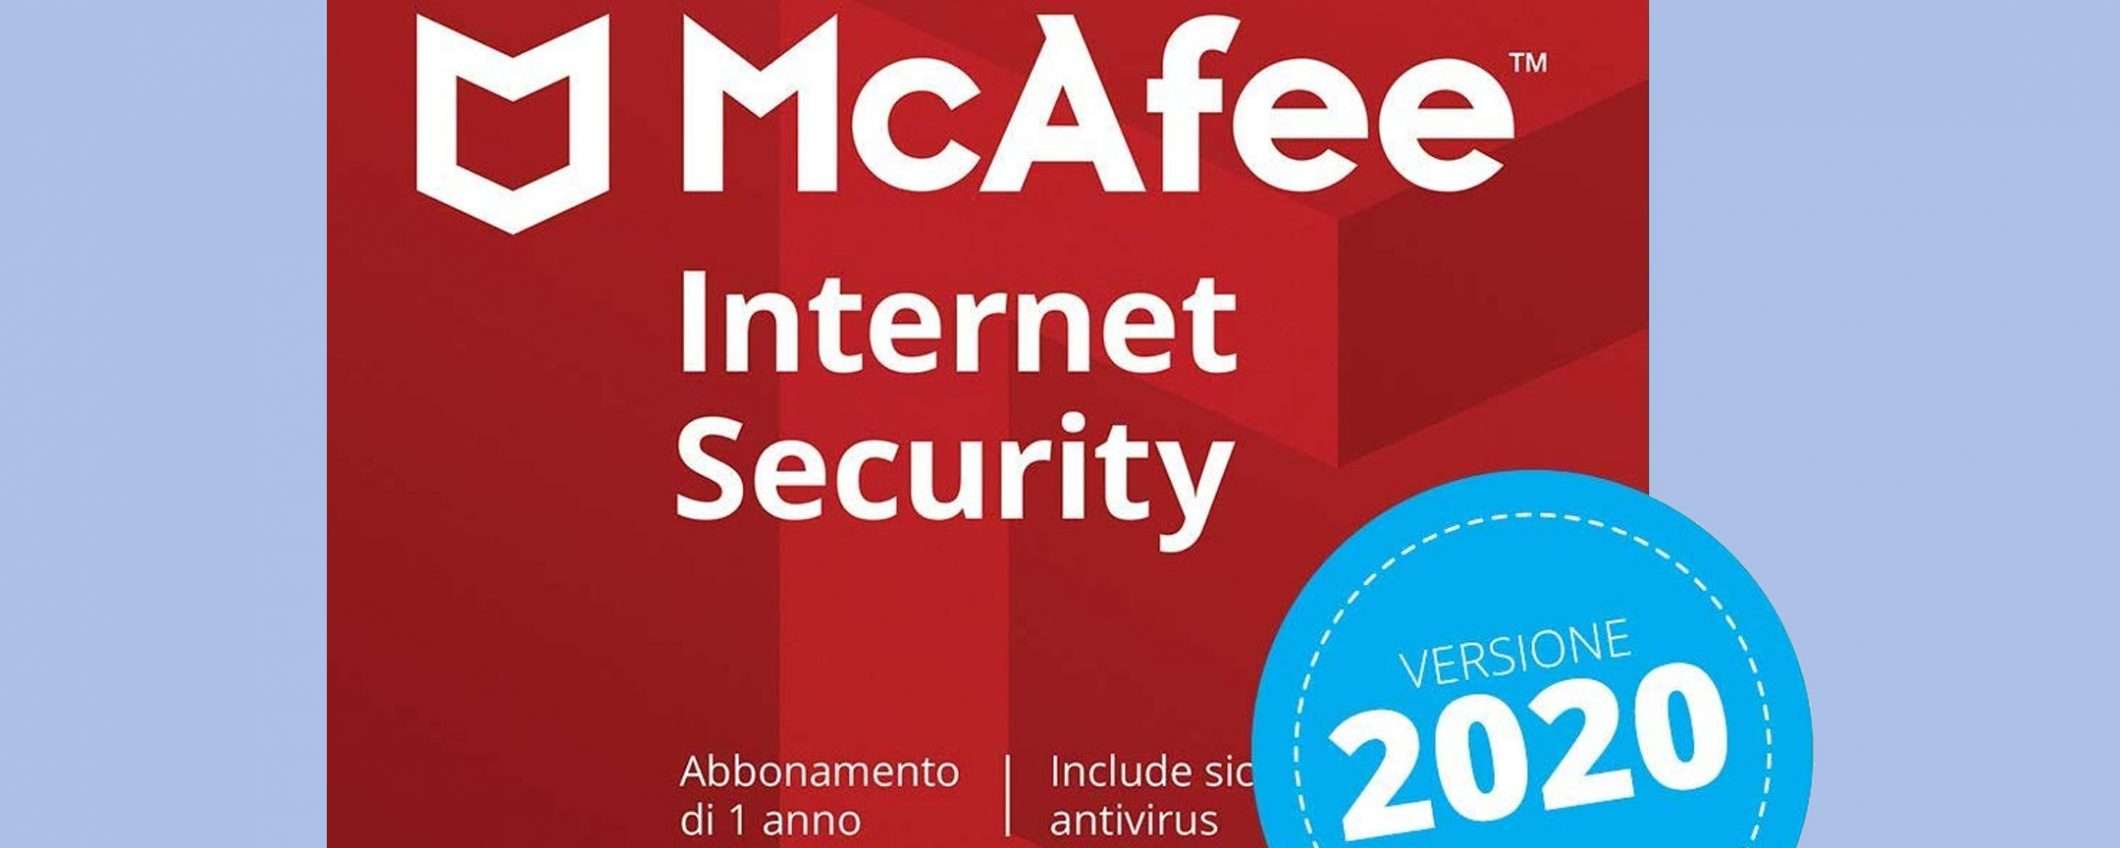 McAfee Internet Security in sconto su Amazon: -46%